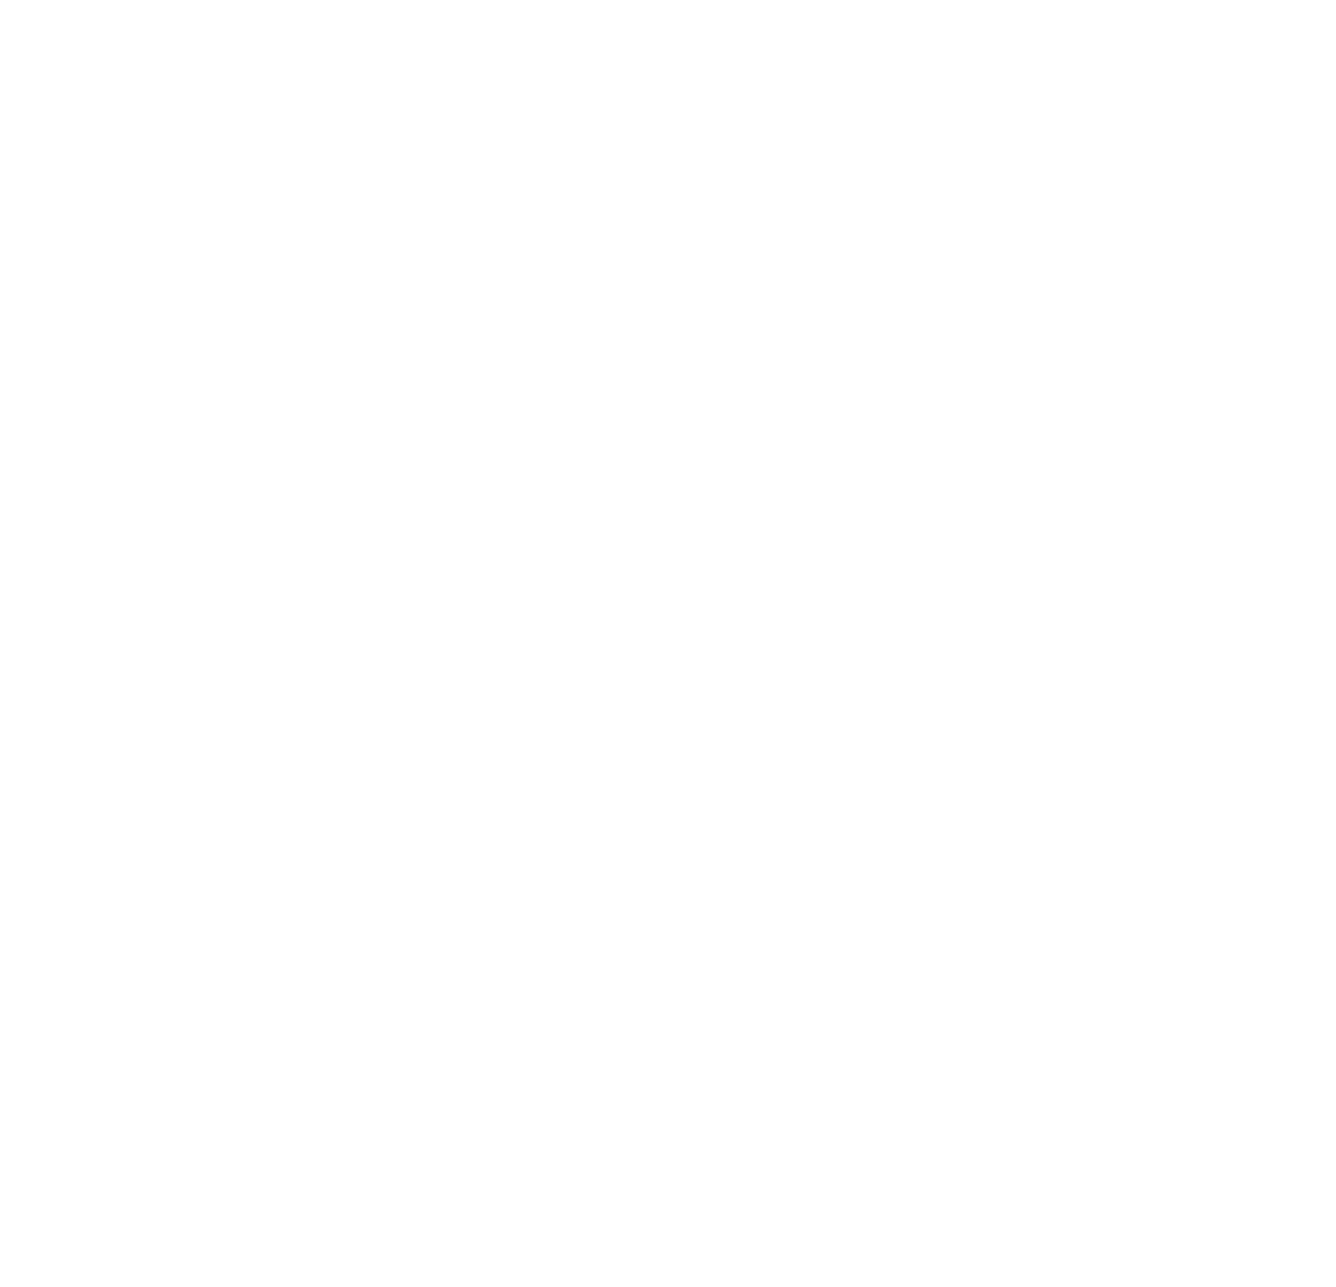 Eva Sarraute - Photographe Professionnelle Aquitaine - Coaching & Mentoring pour photographe